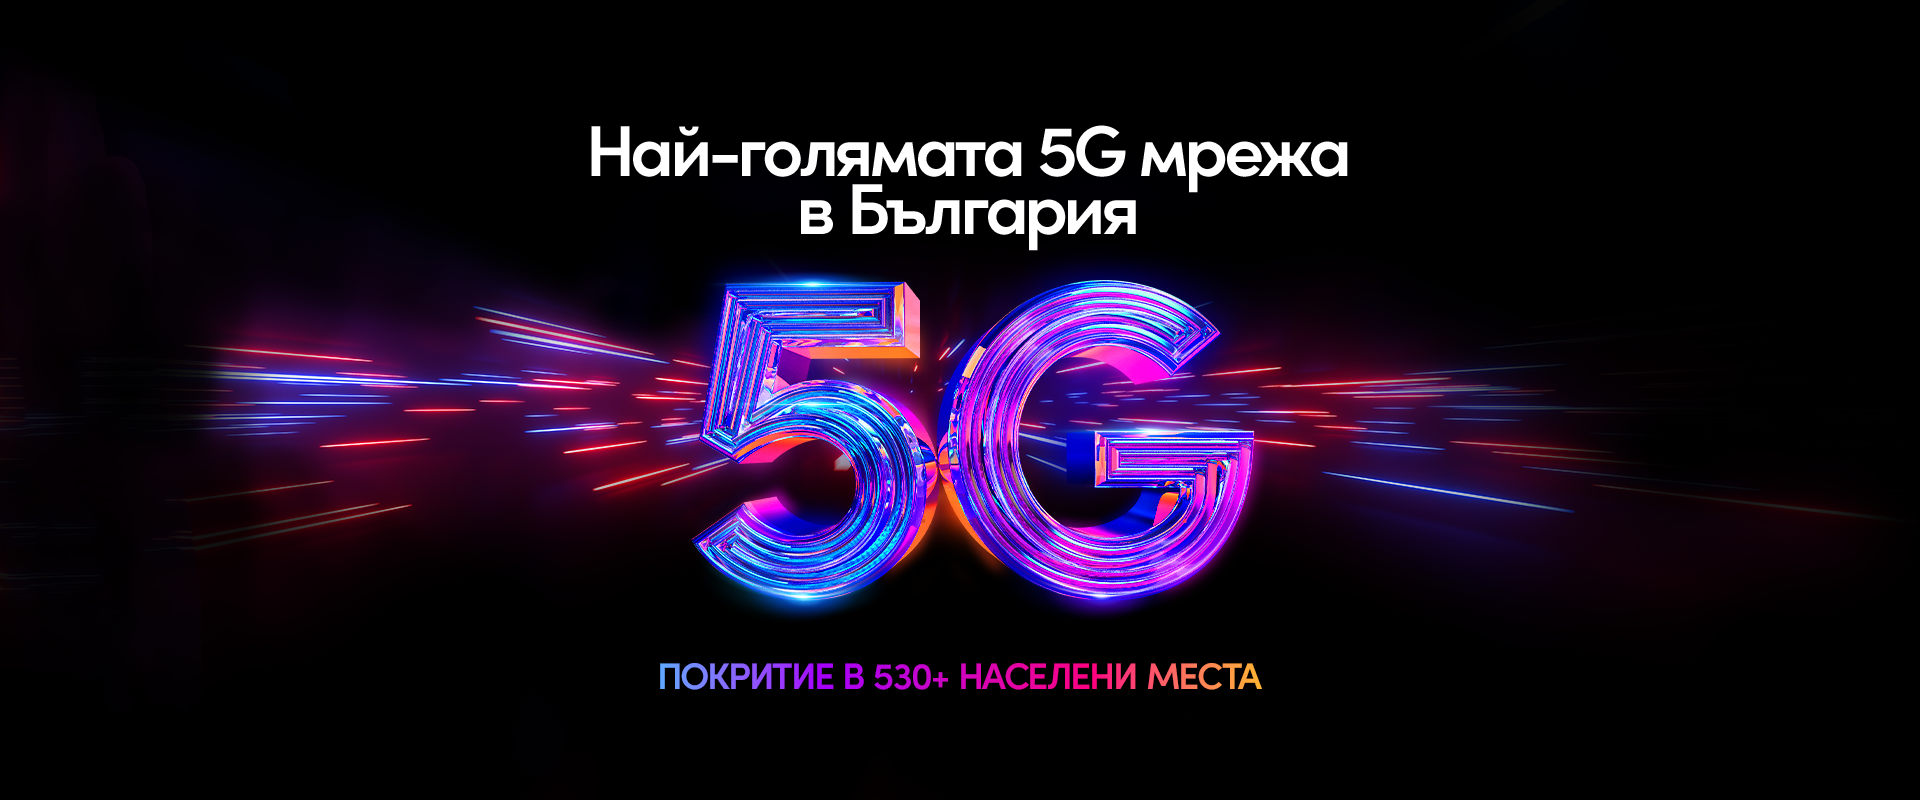 Най-голямата 5G мрежа в България